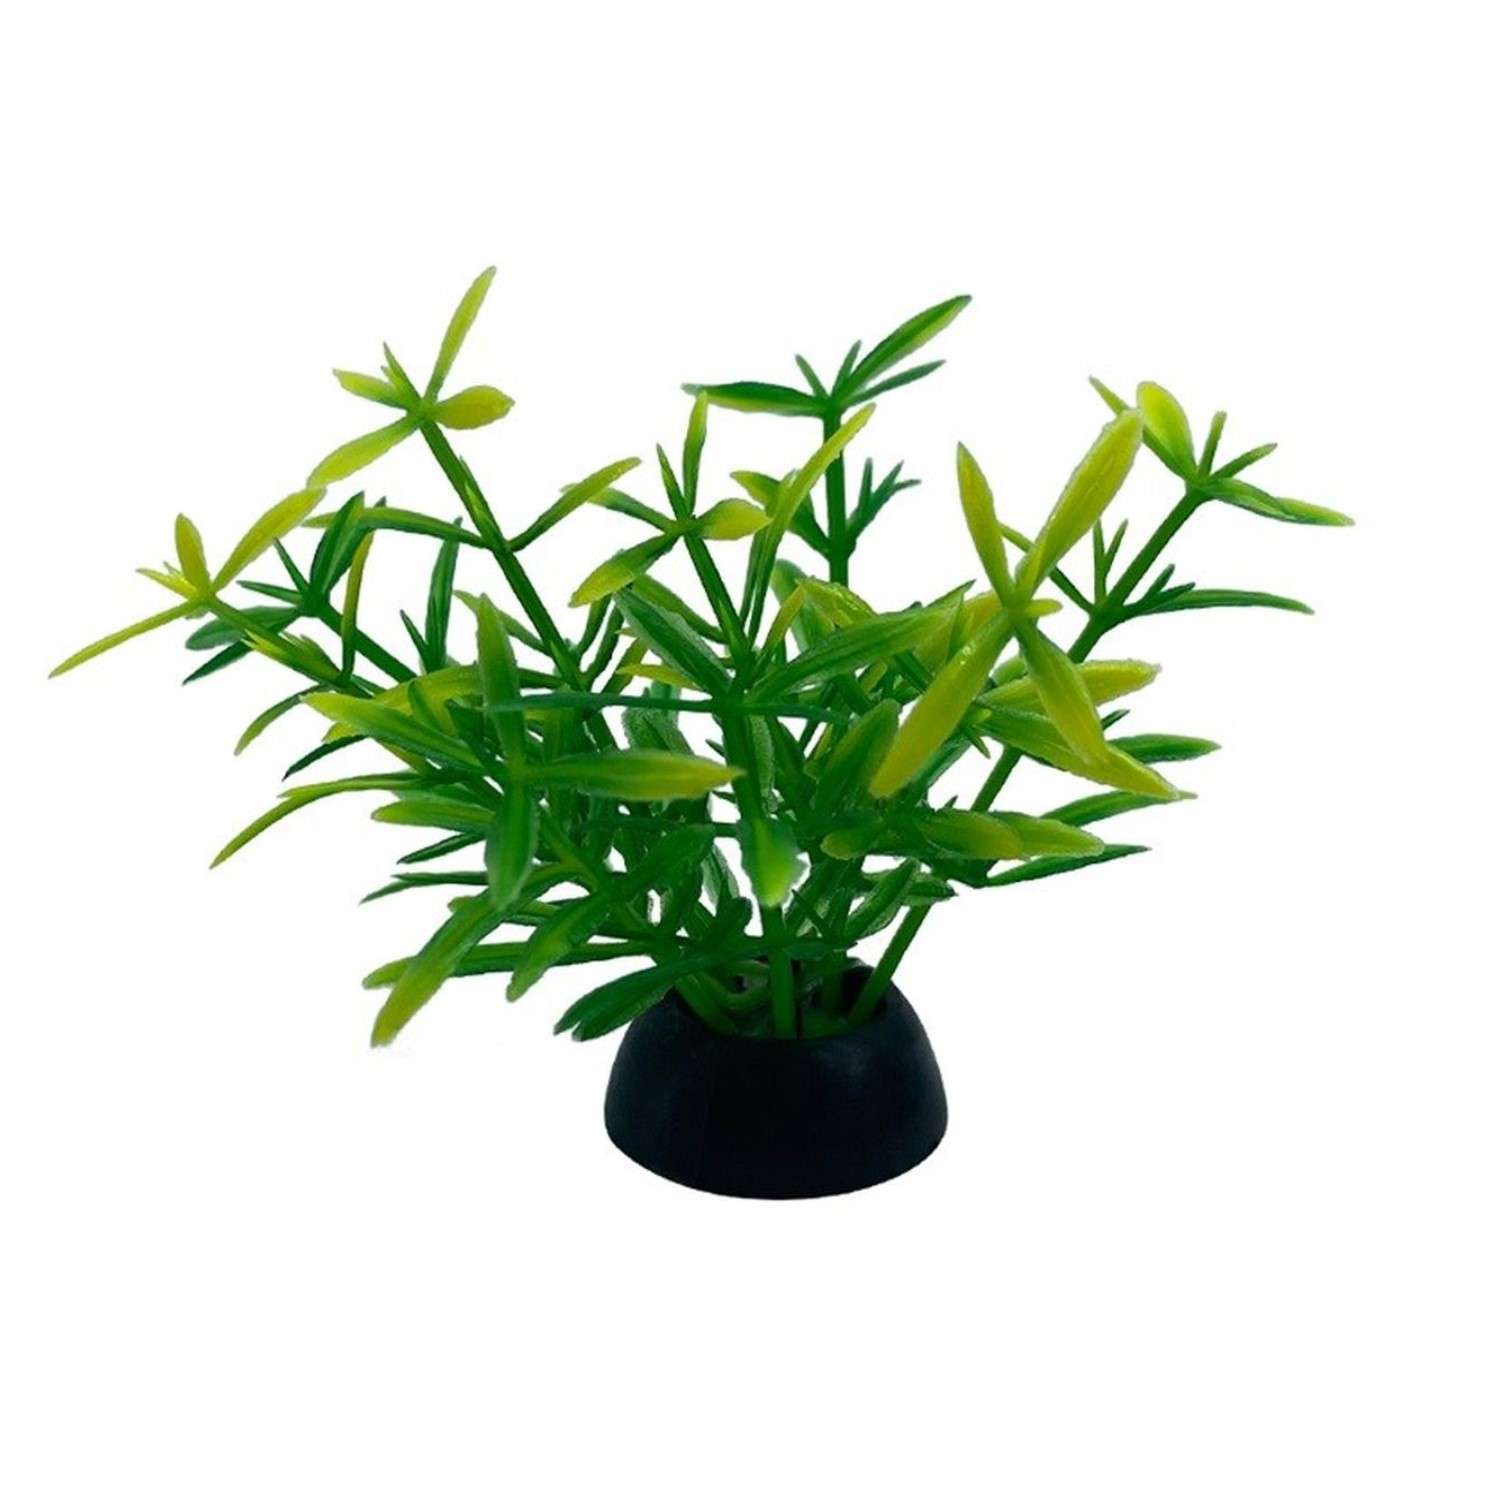 Аквариумное растение Rabizy искусственное 2.5х5 см - фото 2